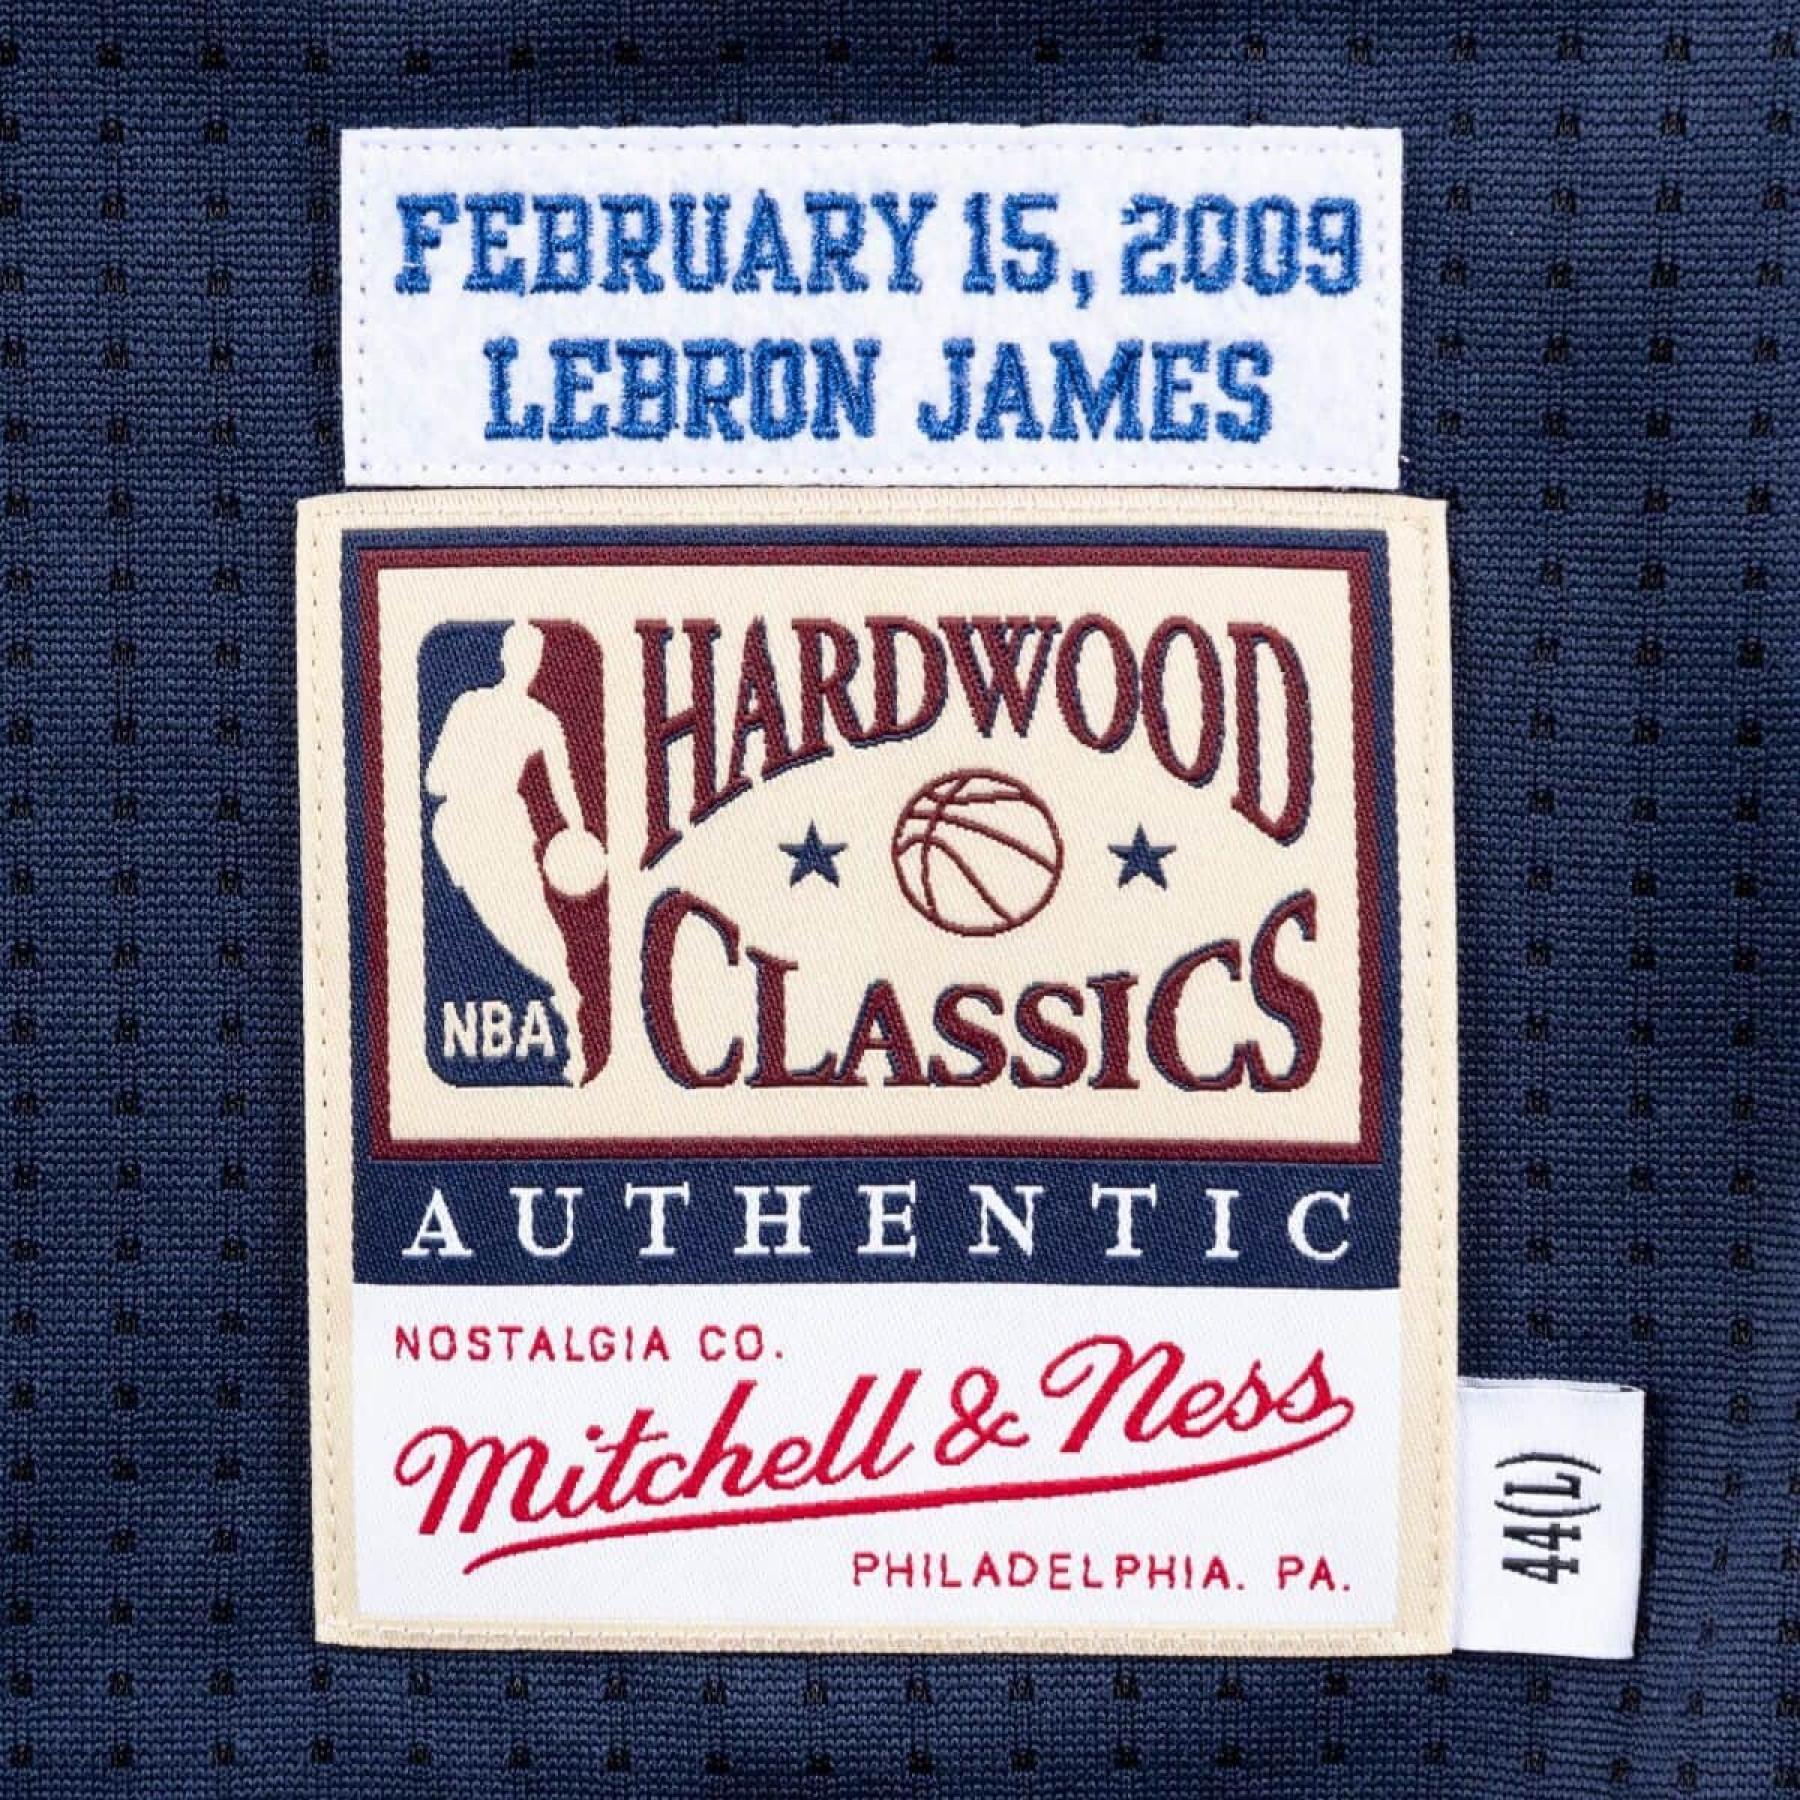 Maglia autentica NBA All Star Est Lebron James 2009